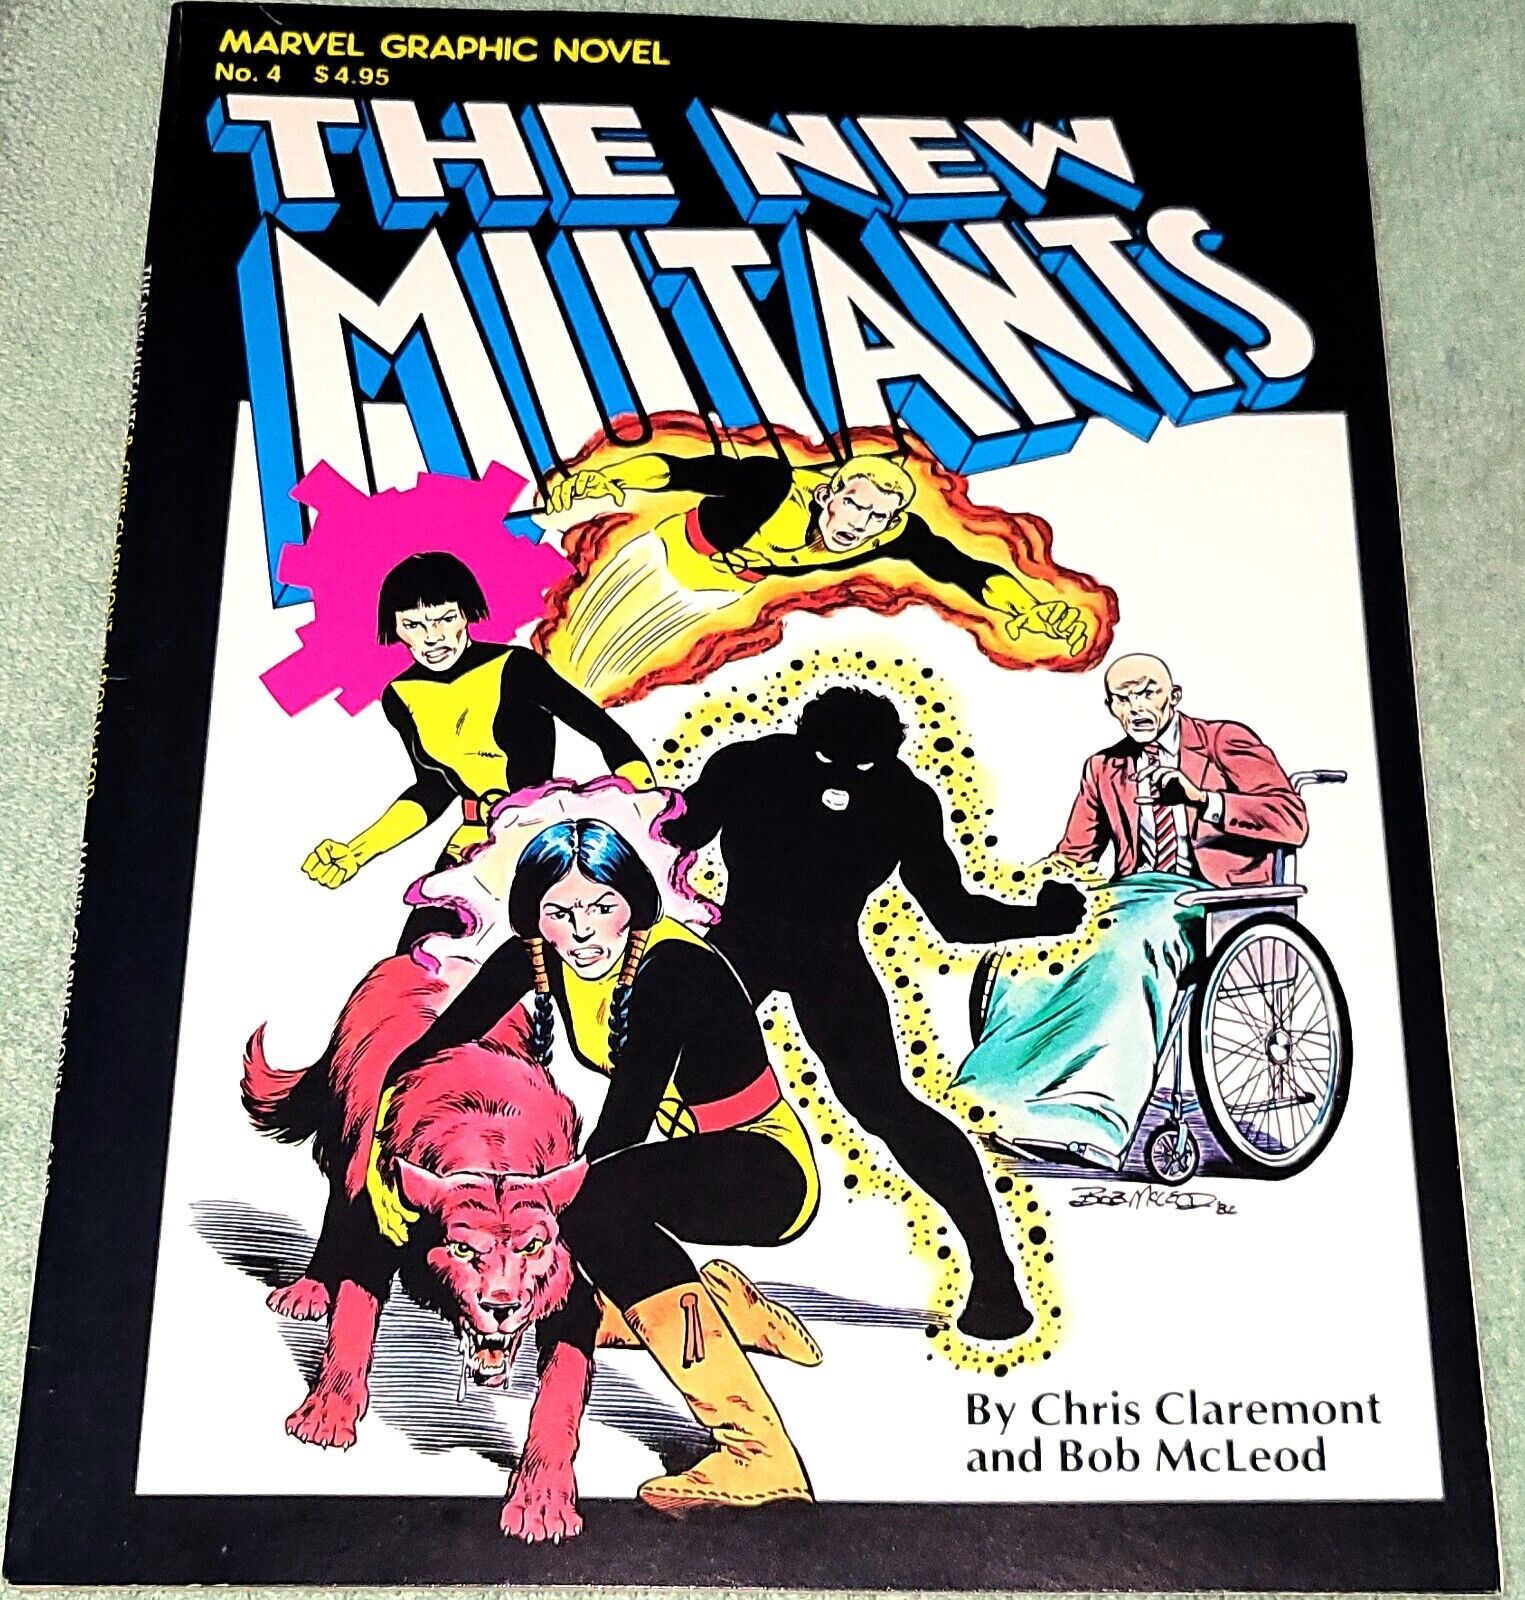 The New Mutants: Marvel Graphic Novel #4 1982 1st App 1st Print VF+ ONE OWNER